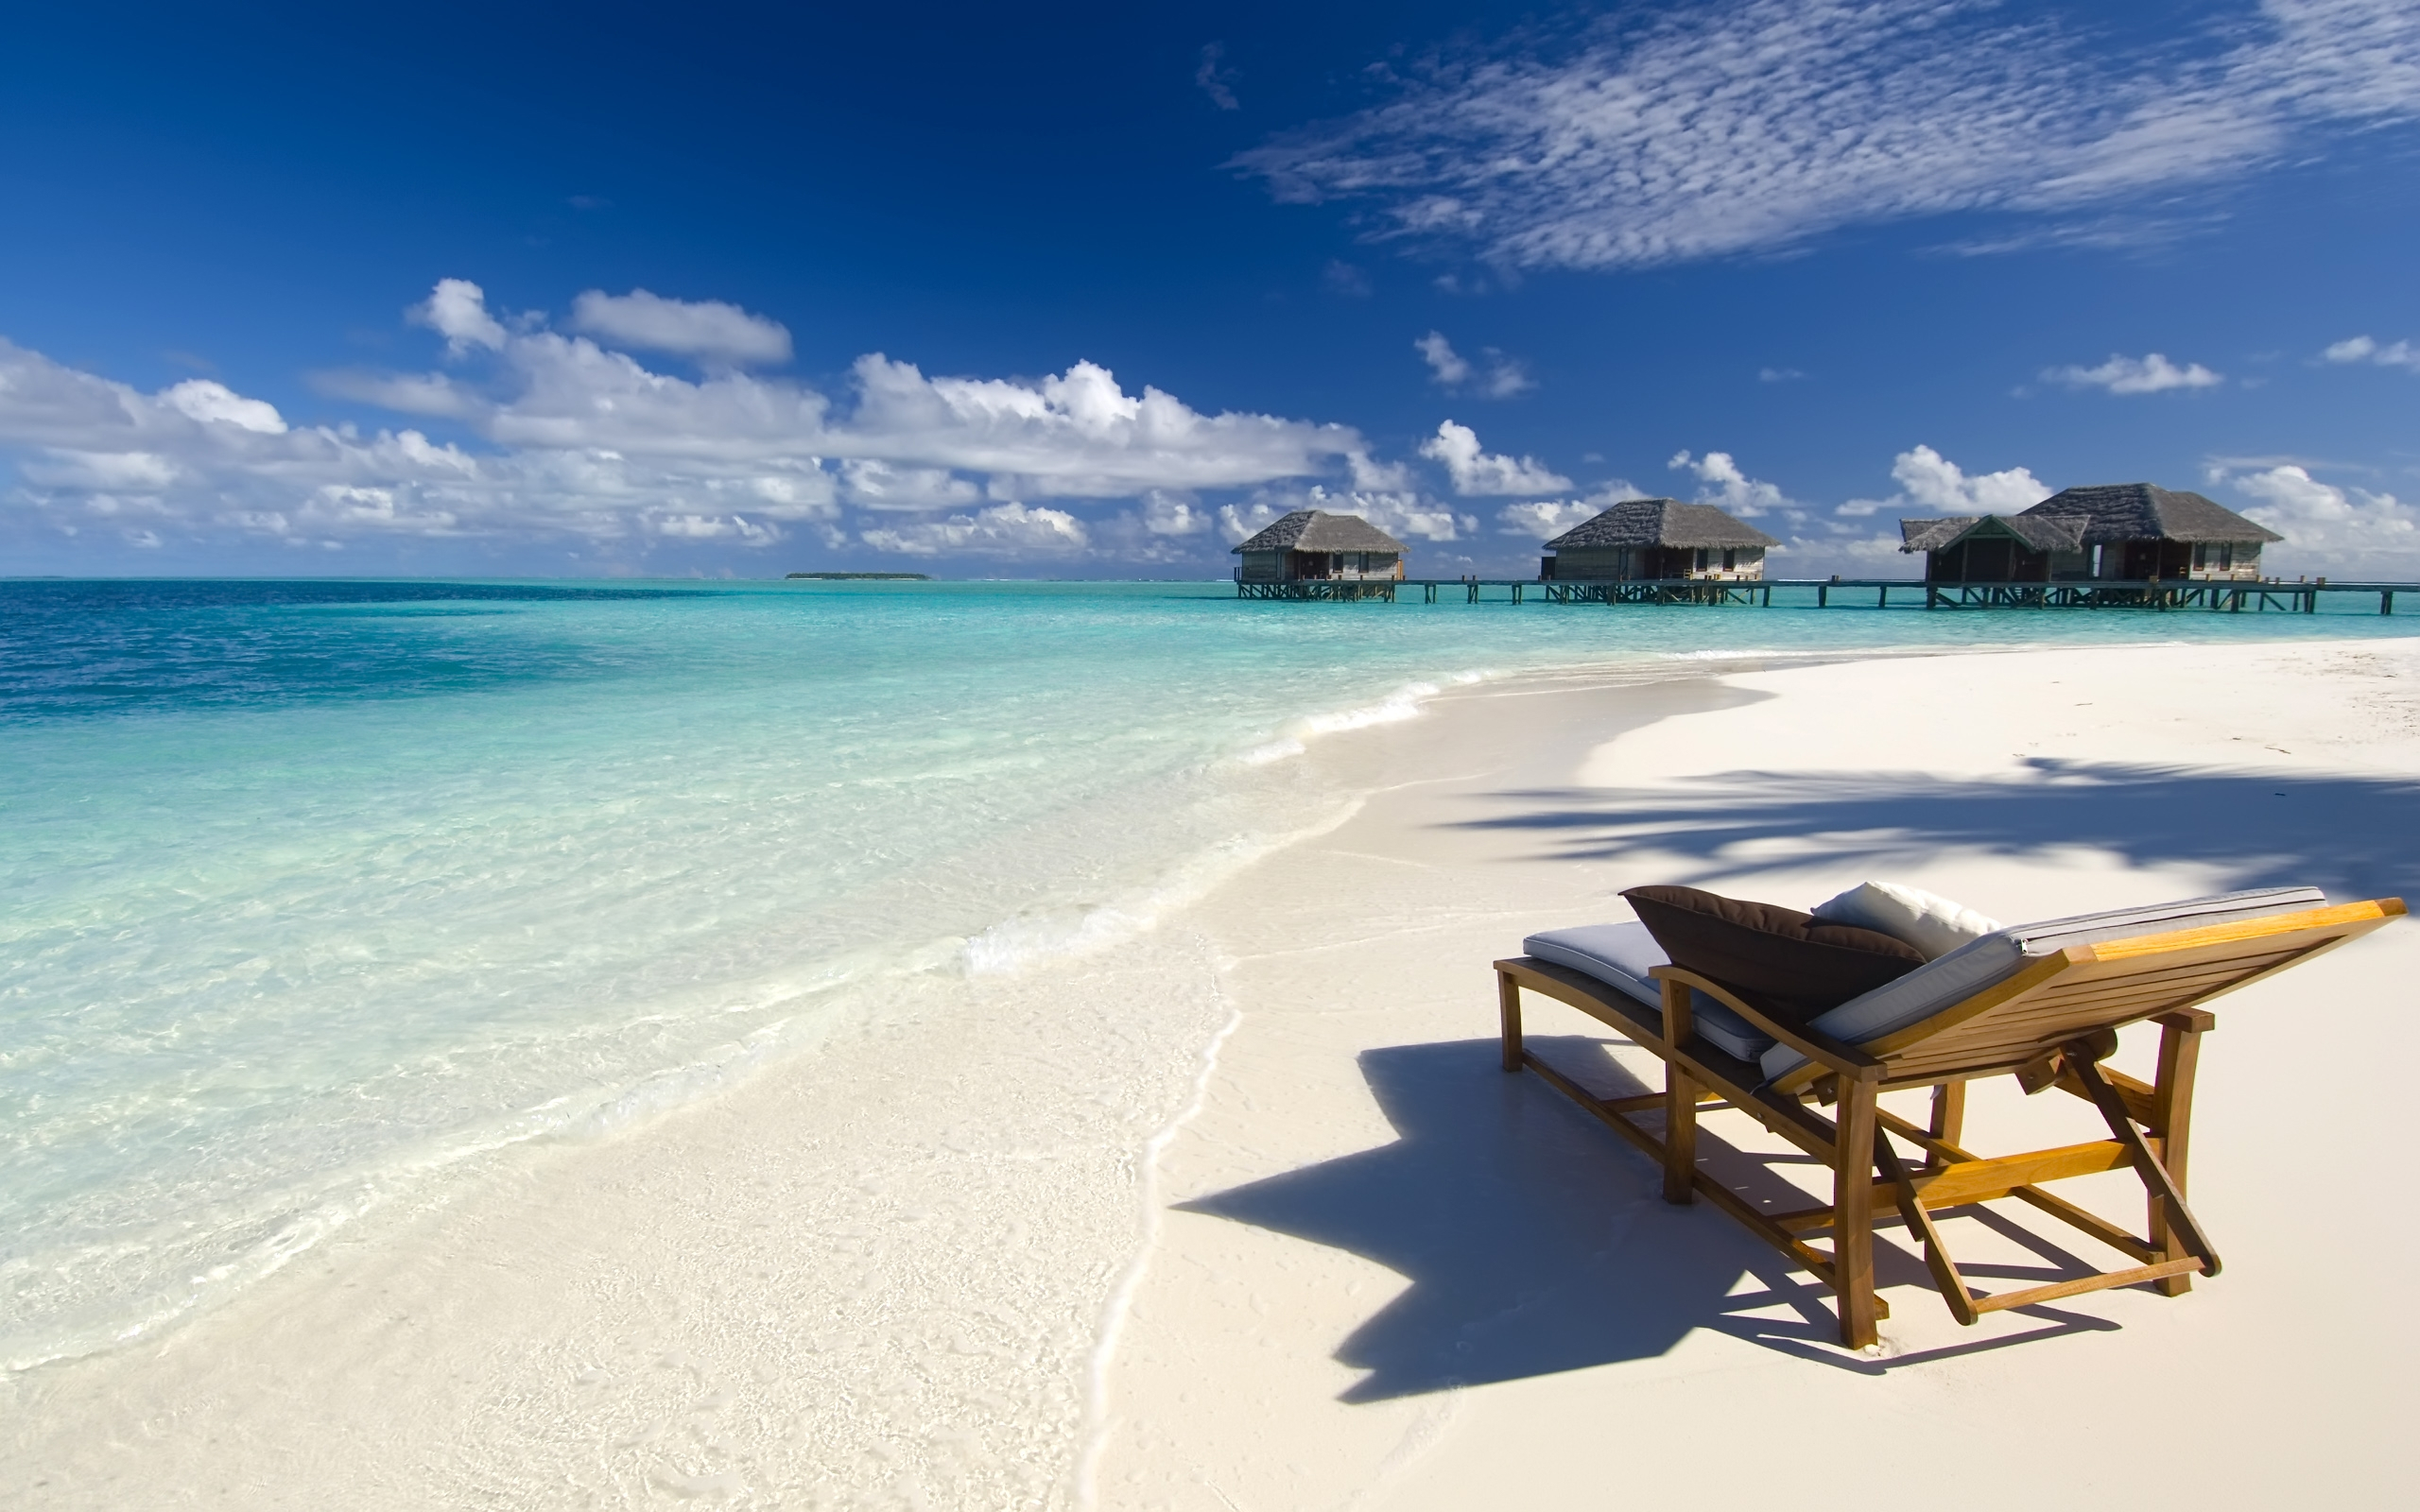 ocean, holiday, sand, beach, photography, chair, hut, tropical QHD